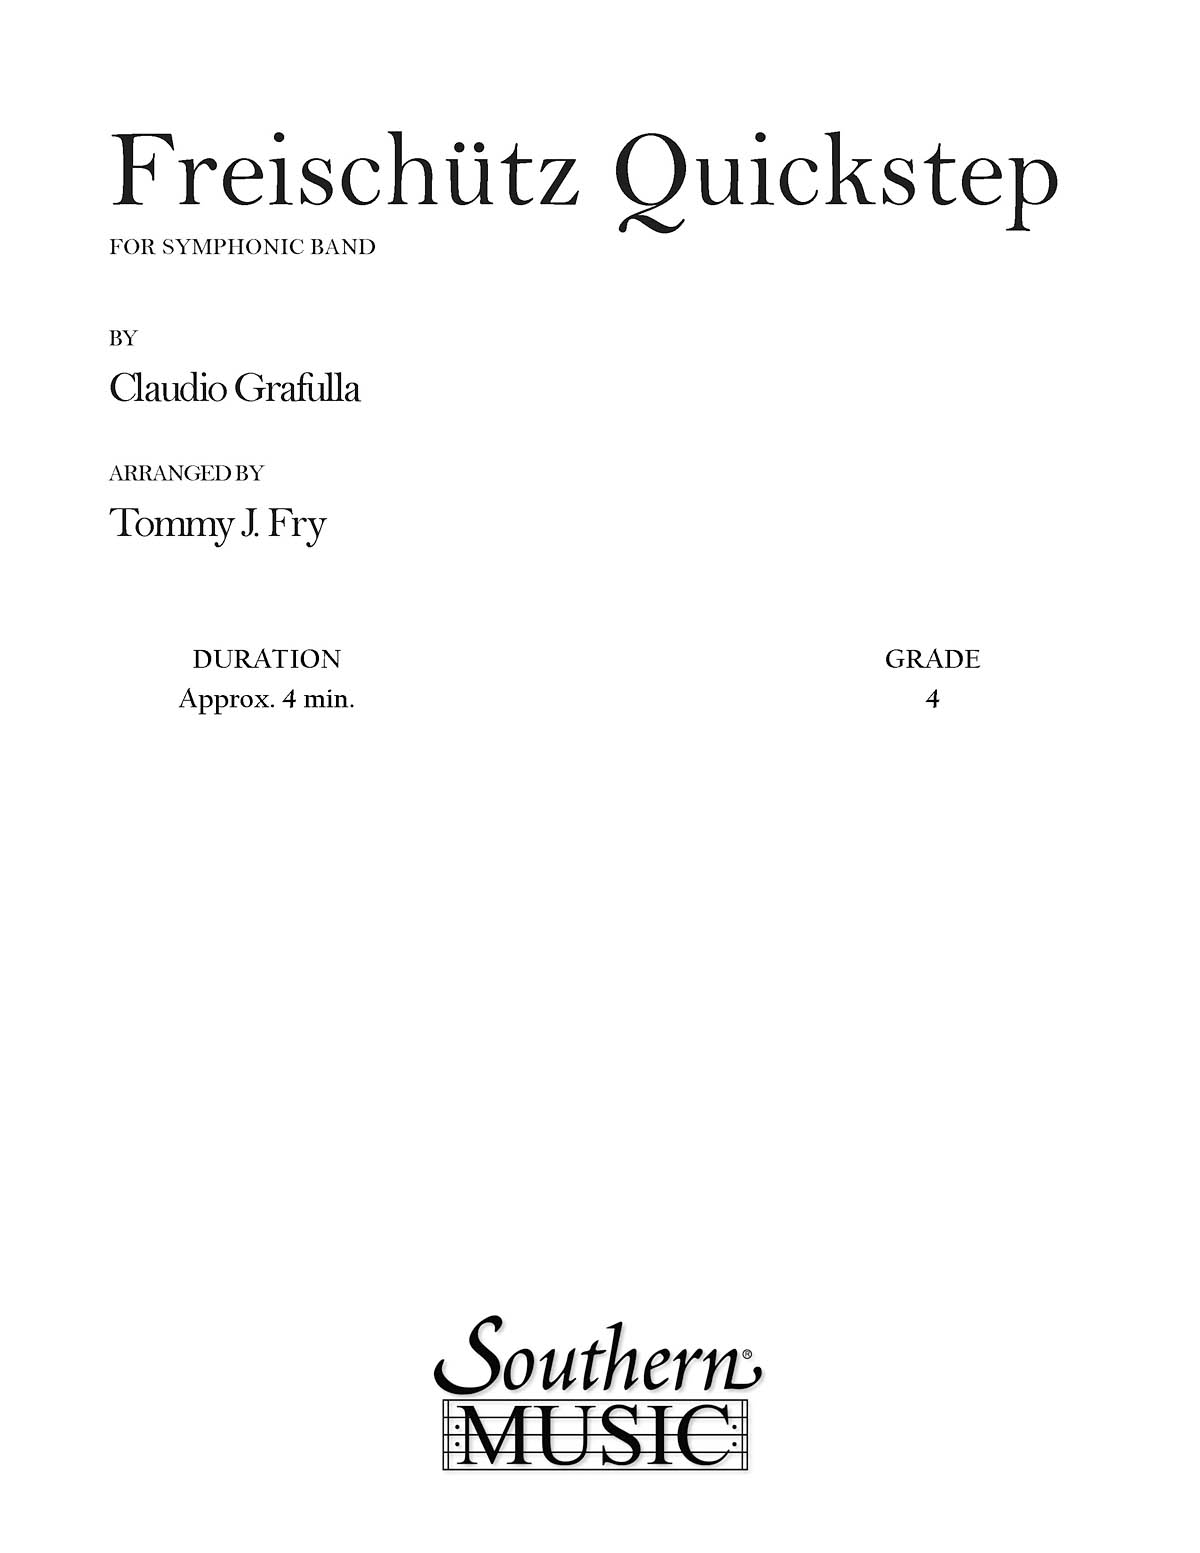 Claudio S. Grafulla: Freischutz Quickstep: Concert Band: Score & Parts